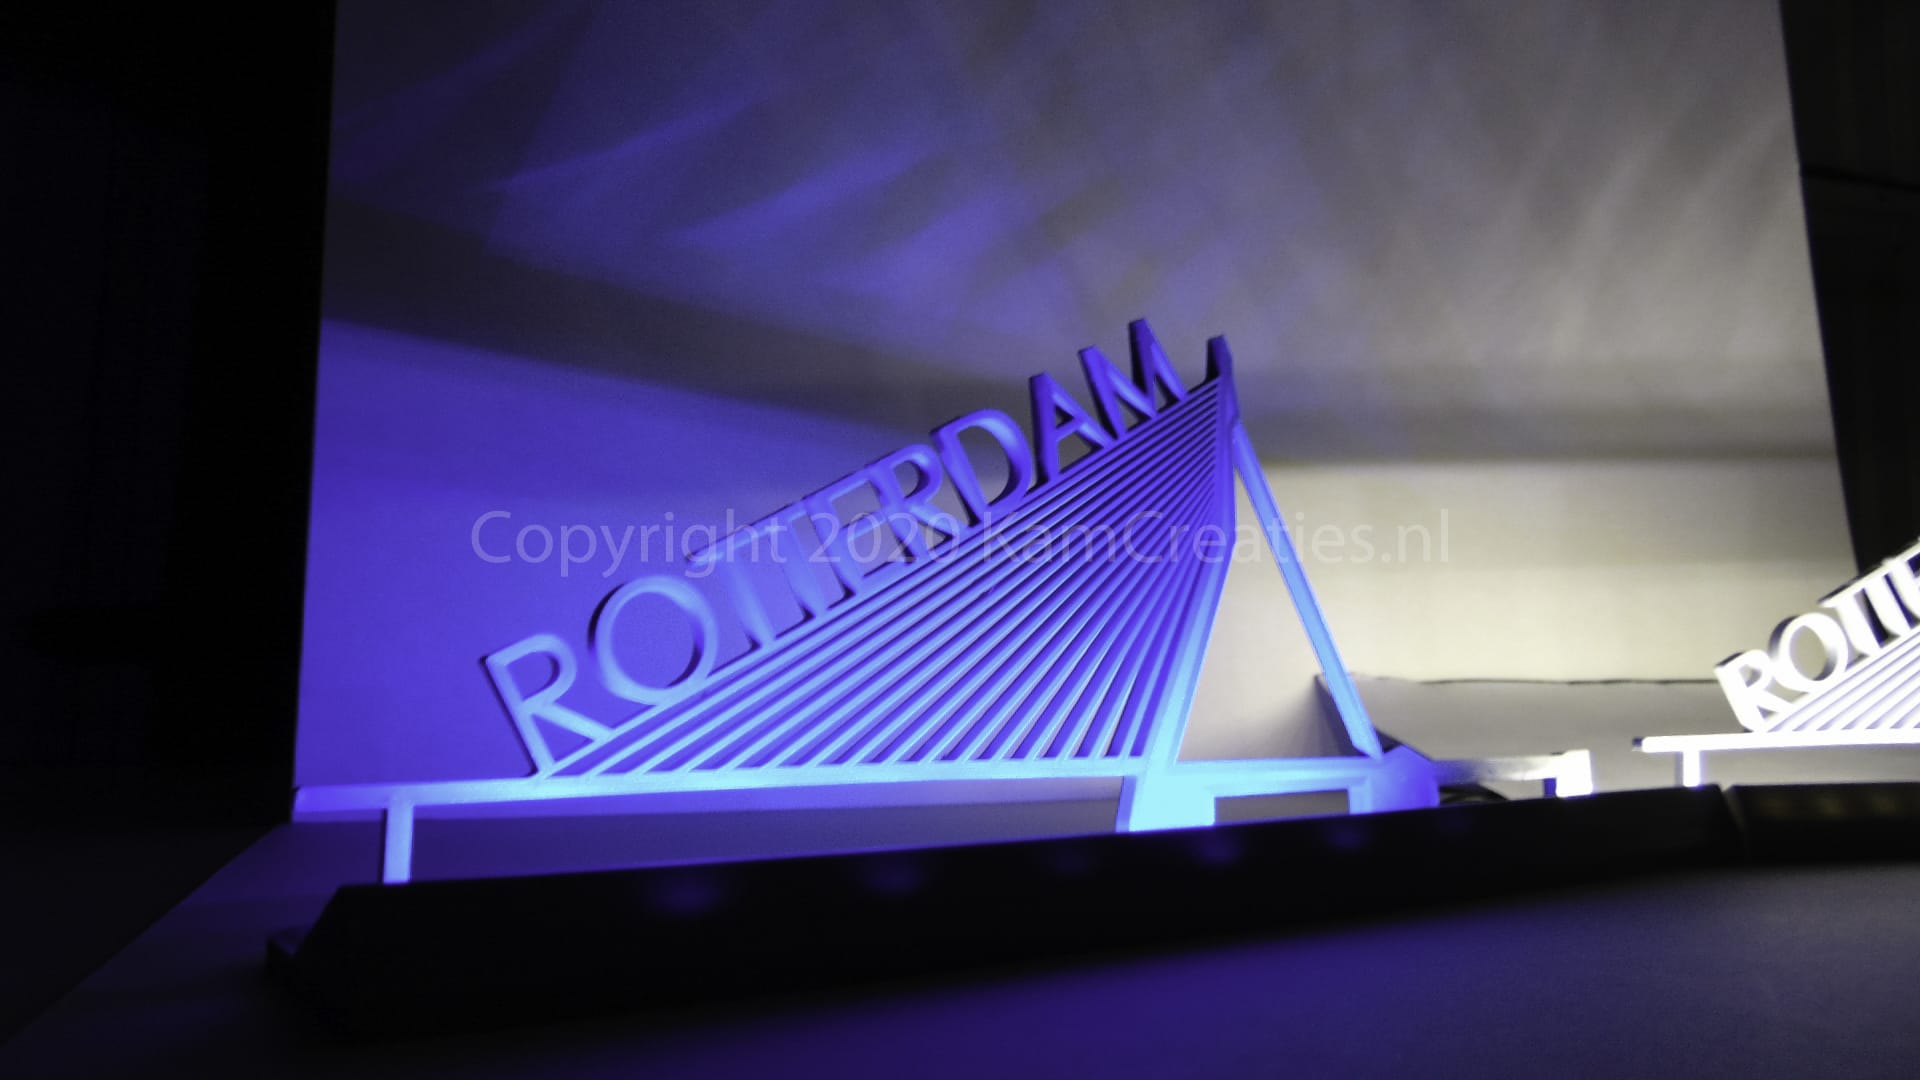 Erasmusbrug - Rotterdam - LED